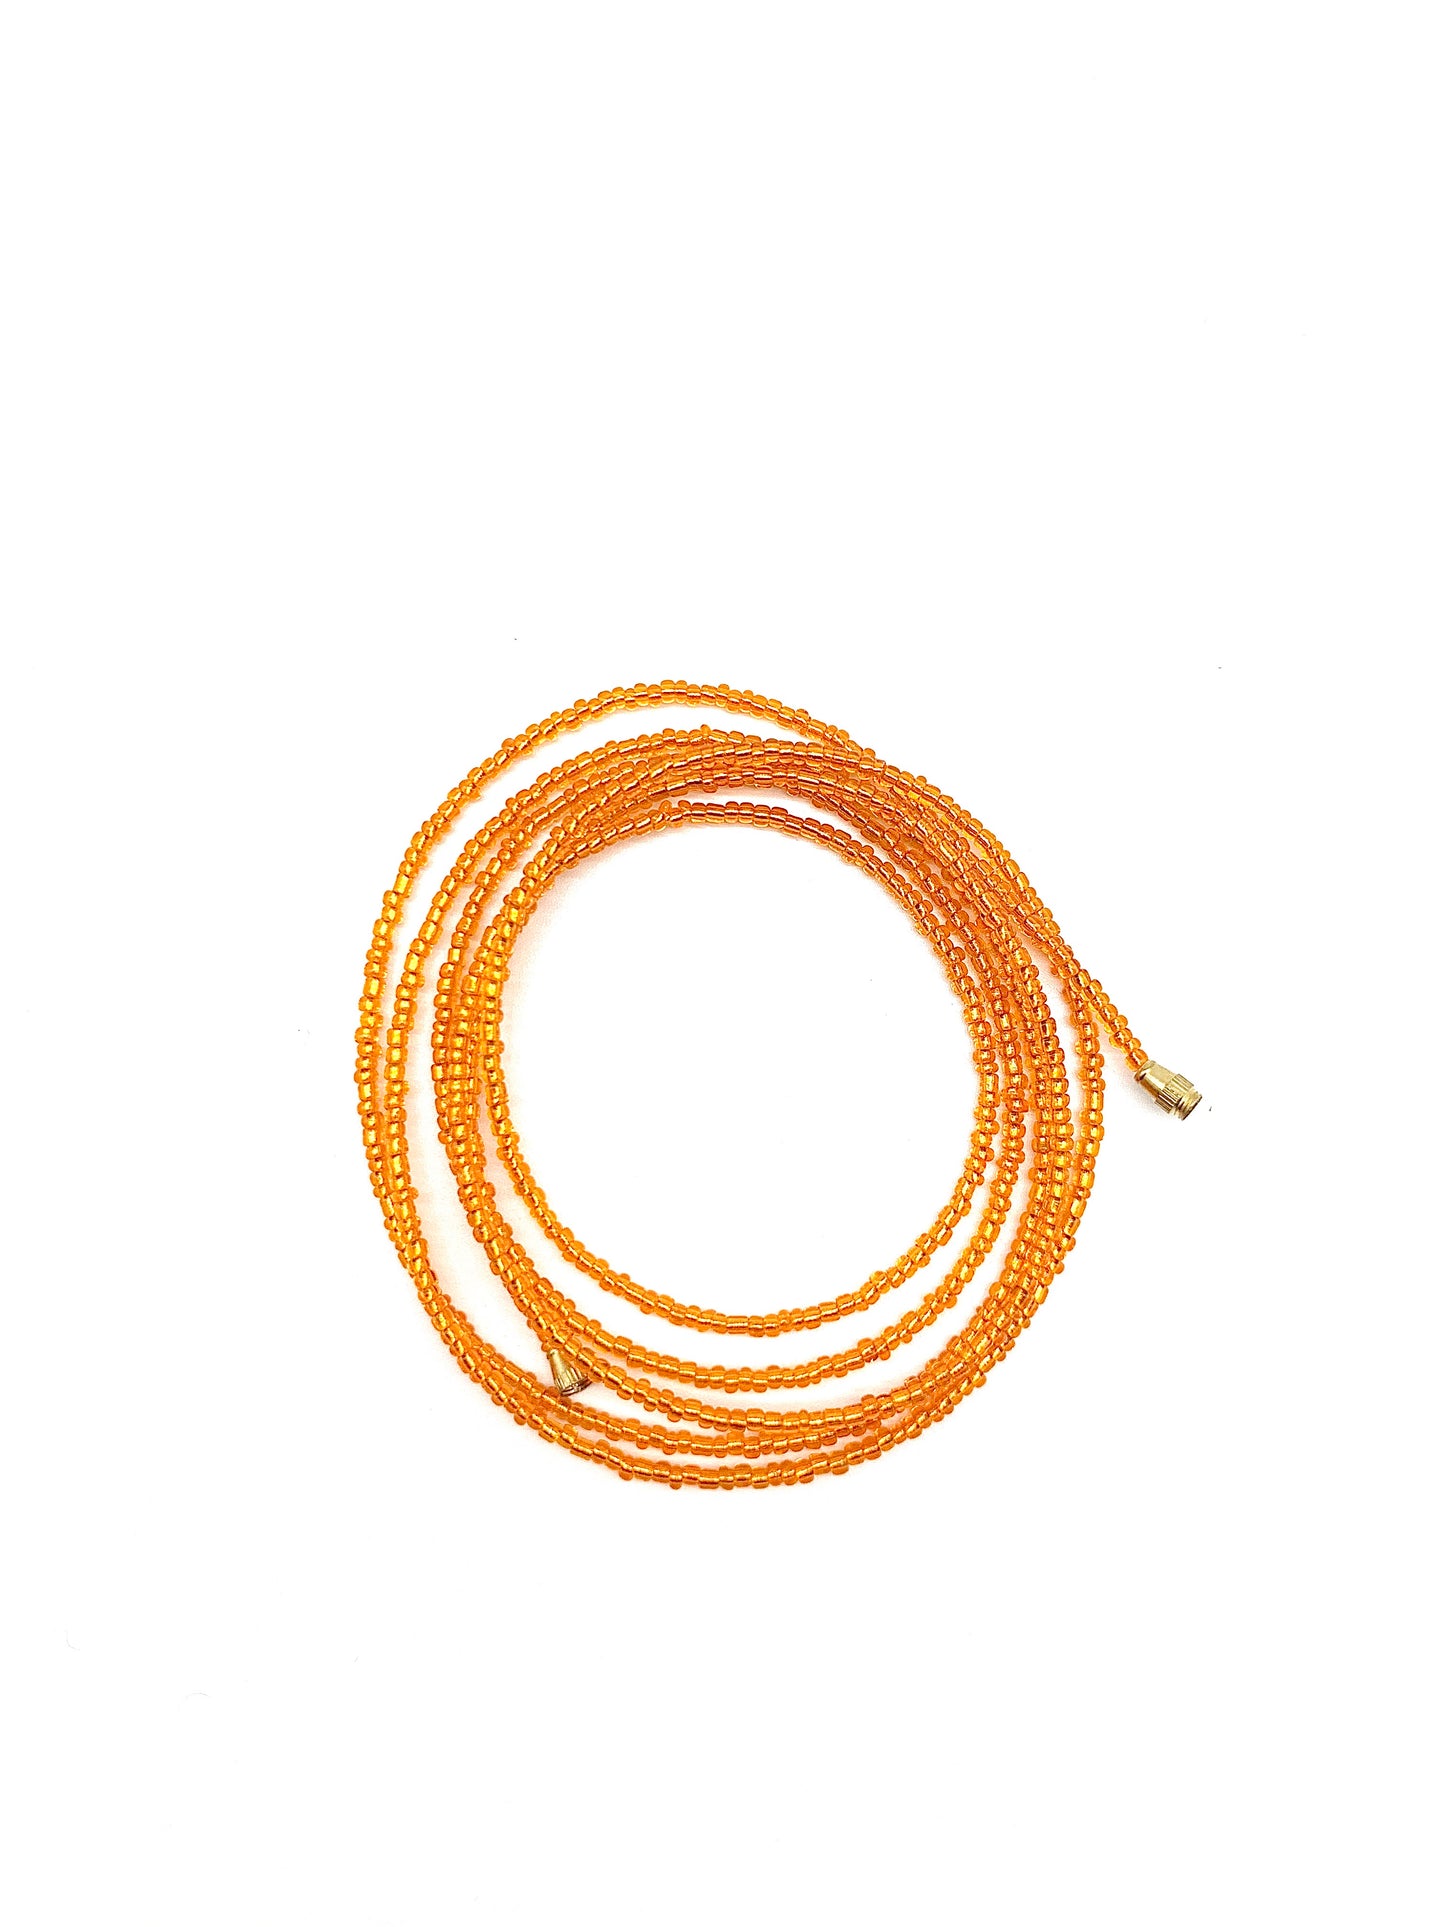 Tiger Orange! African Waist Beads / Necklace / Bracelet / Anklet